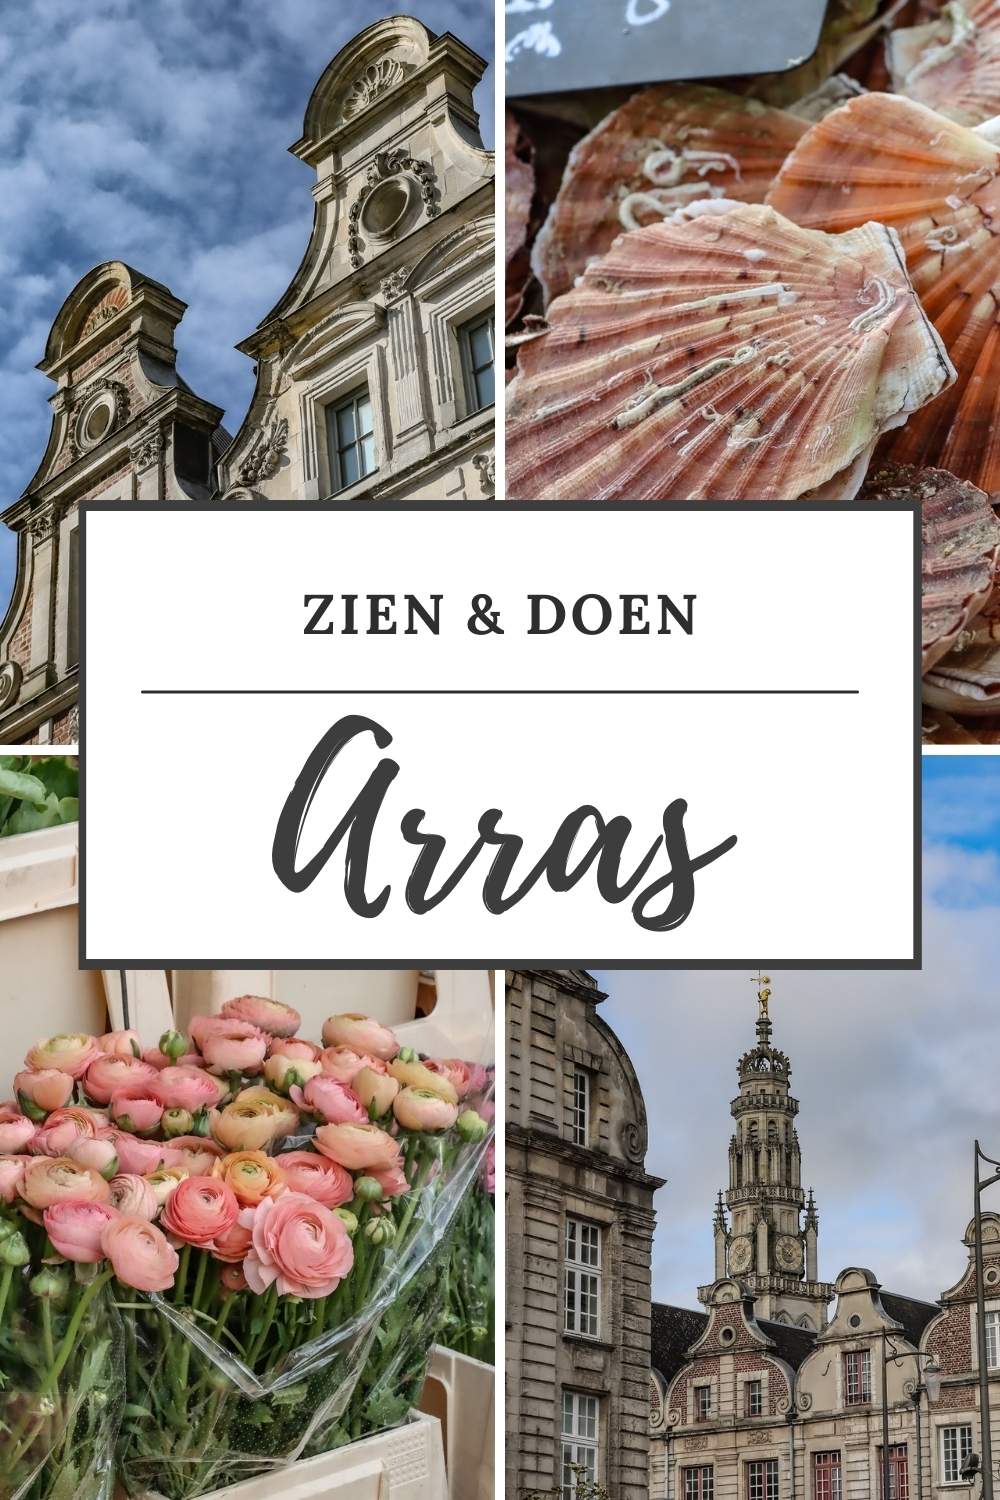 Arras, Frankrijk: bekijk de mooiste bezienswaardigheden in Arras (Atrecht) | Mooistestedentrips.nl